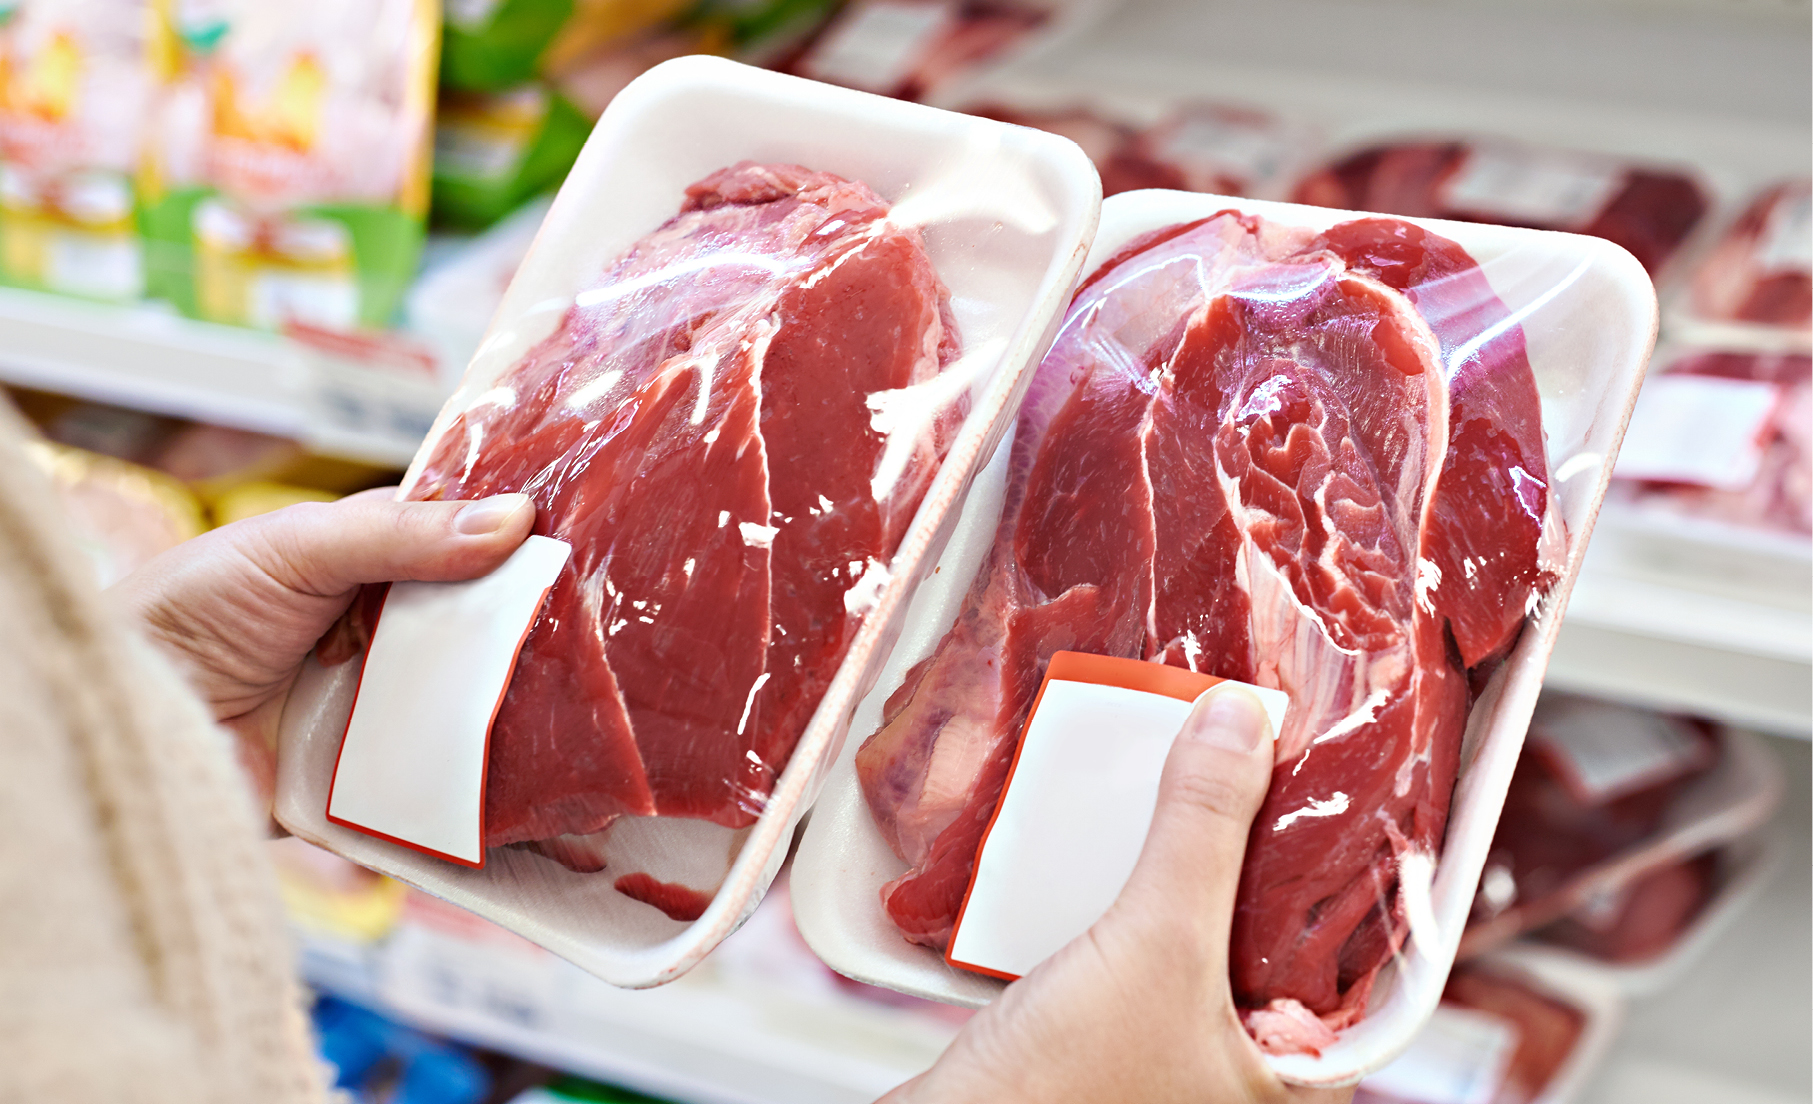 Descubra o por quê a carne está mais barata no mercado